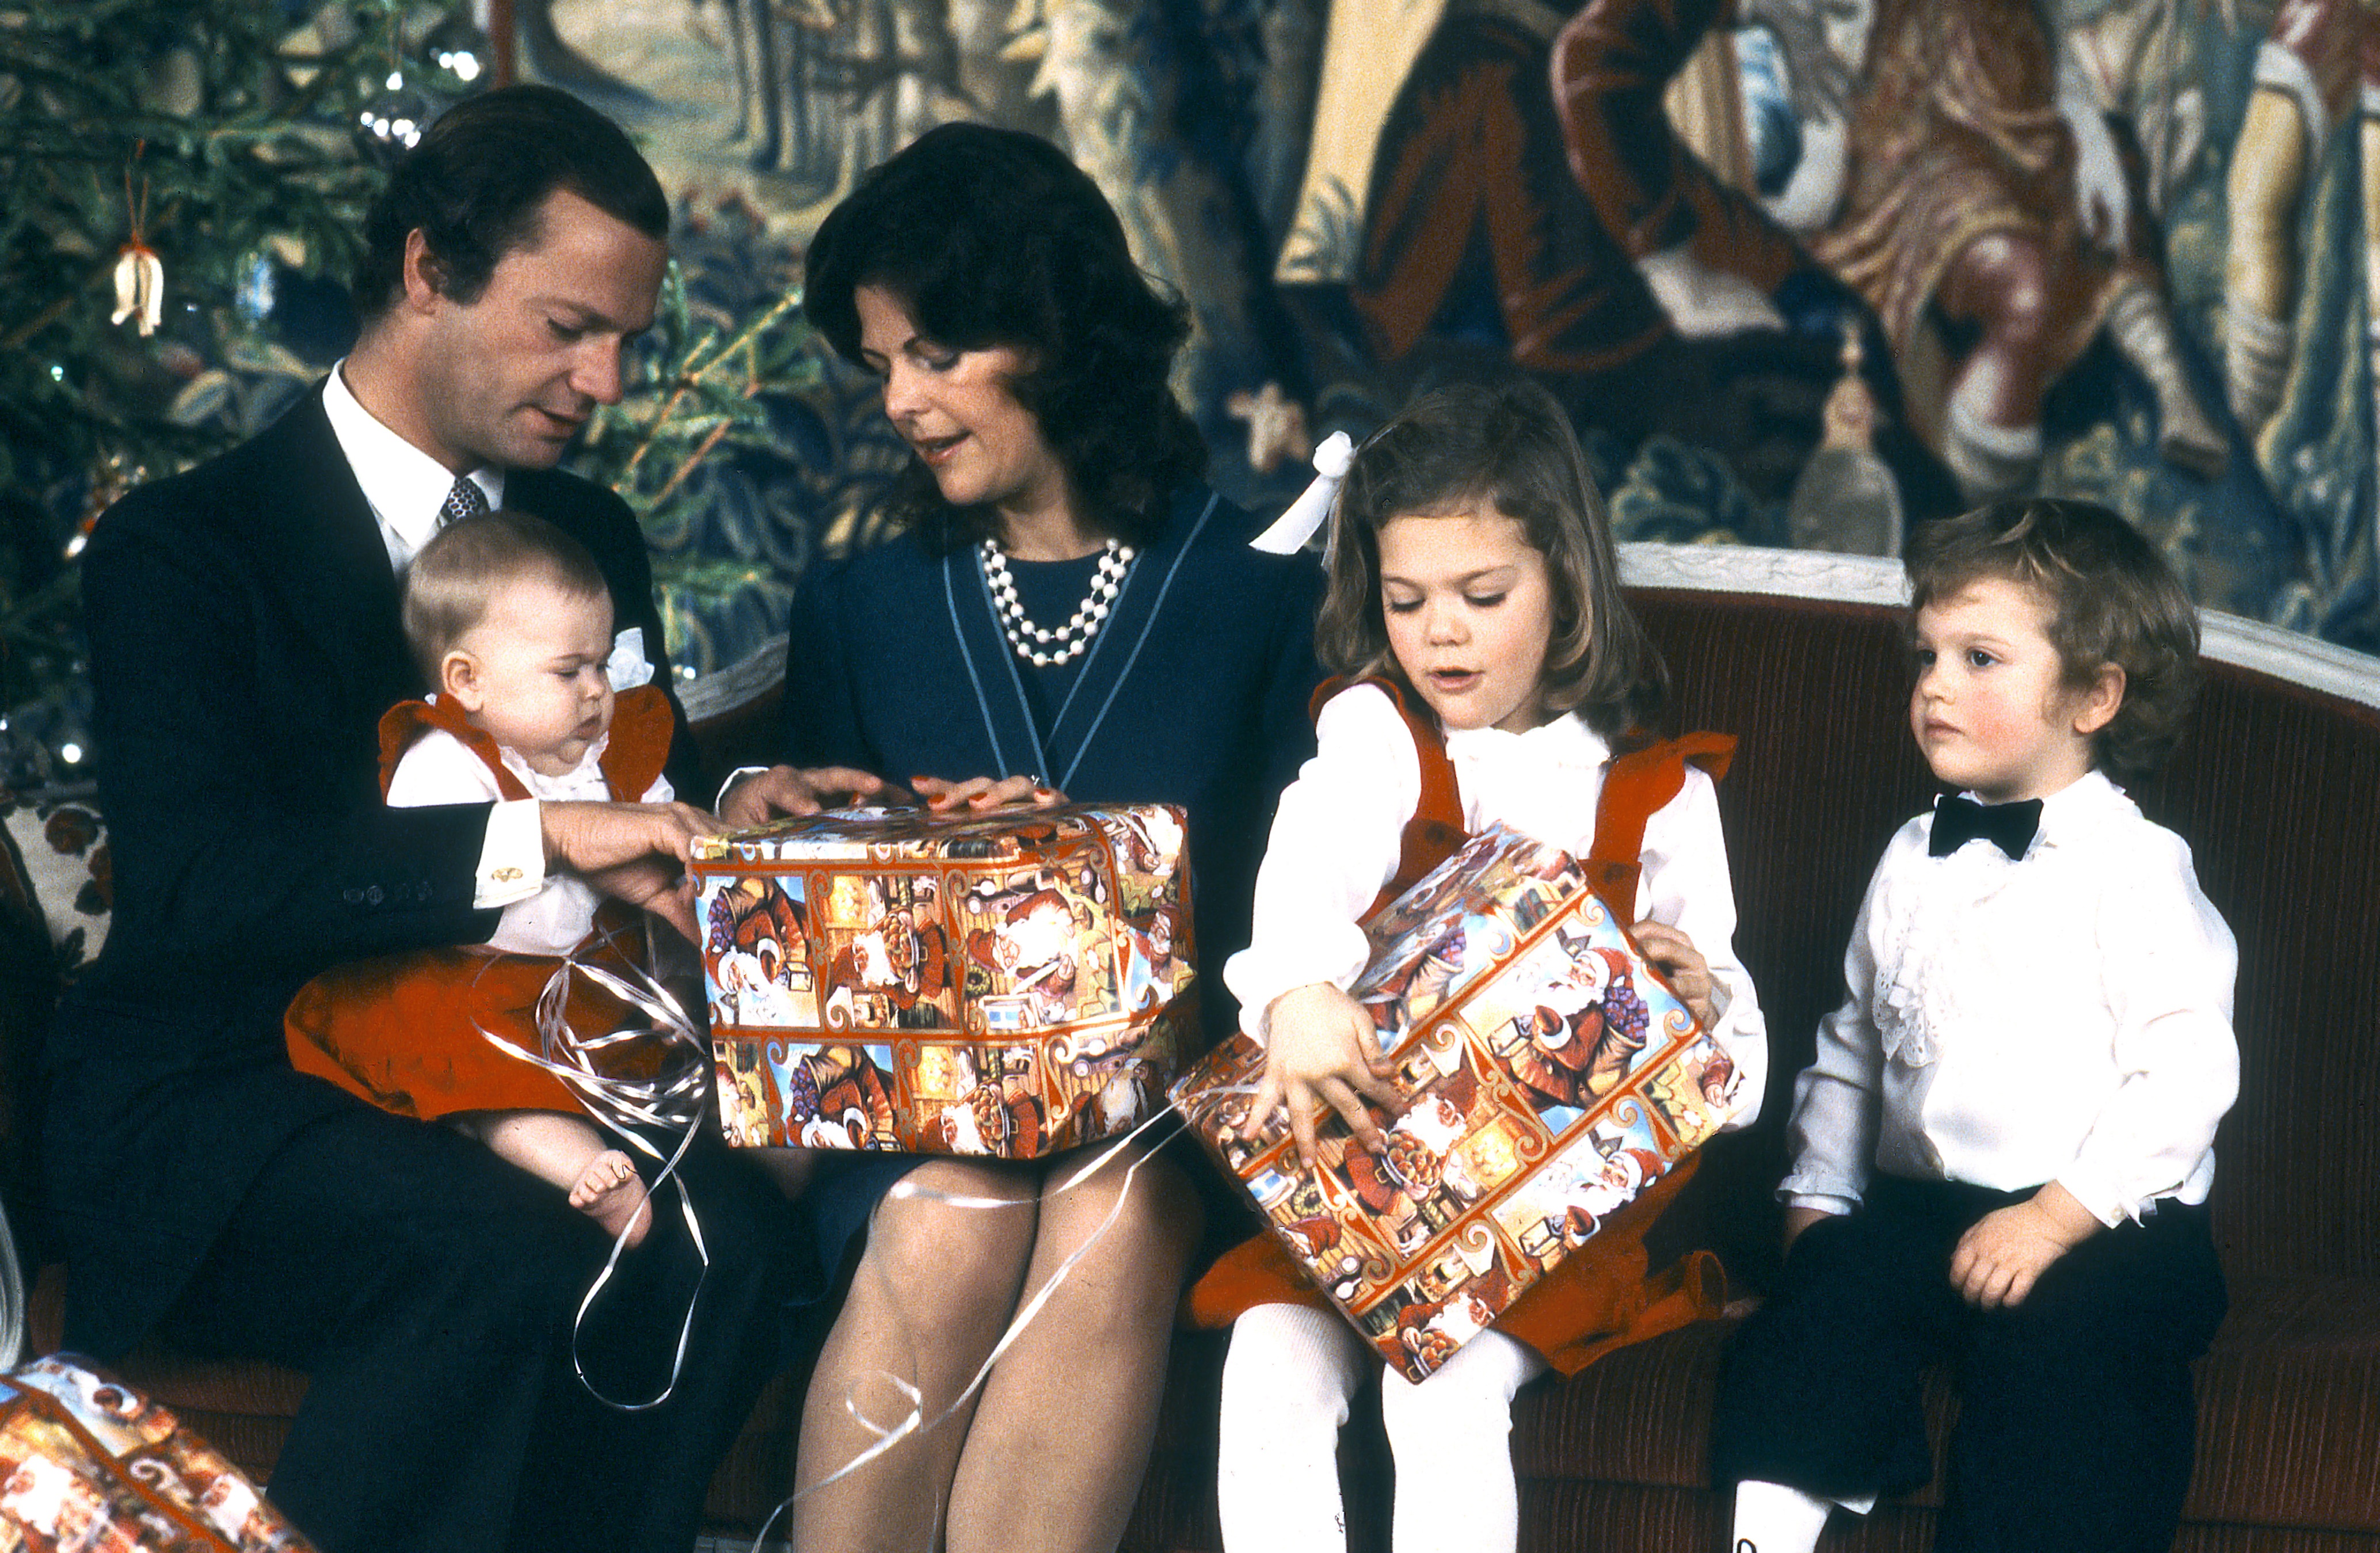 1982. Lilla prinsessan Madeleine firar sin första jul.